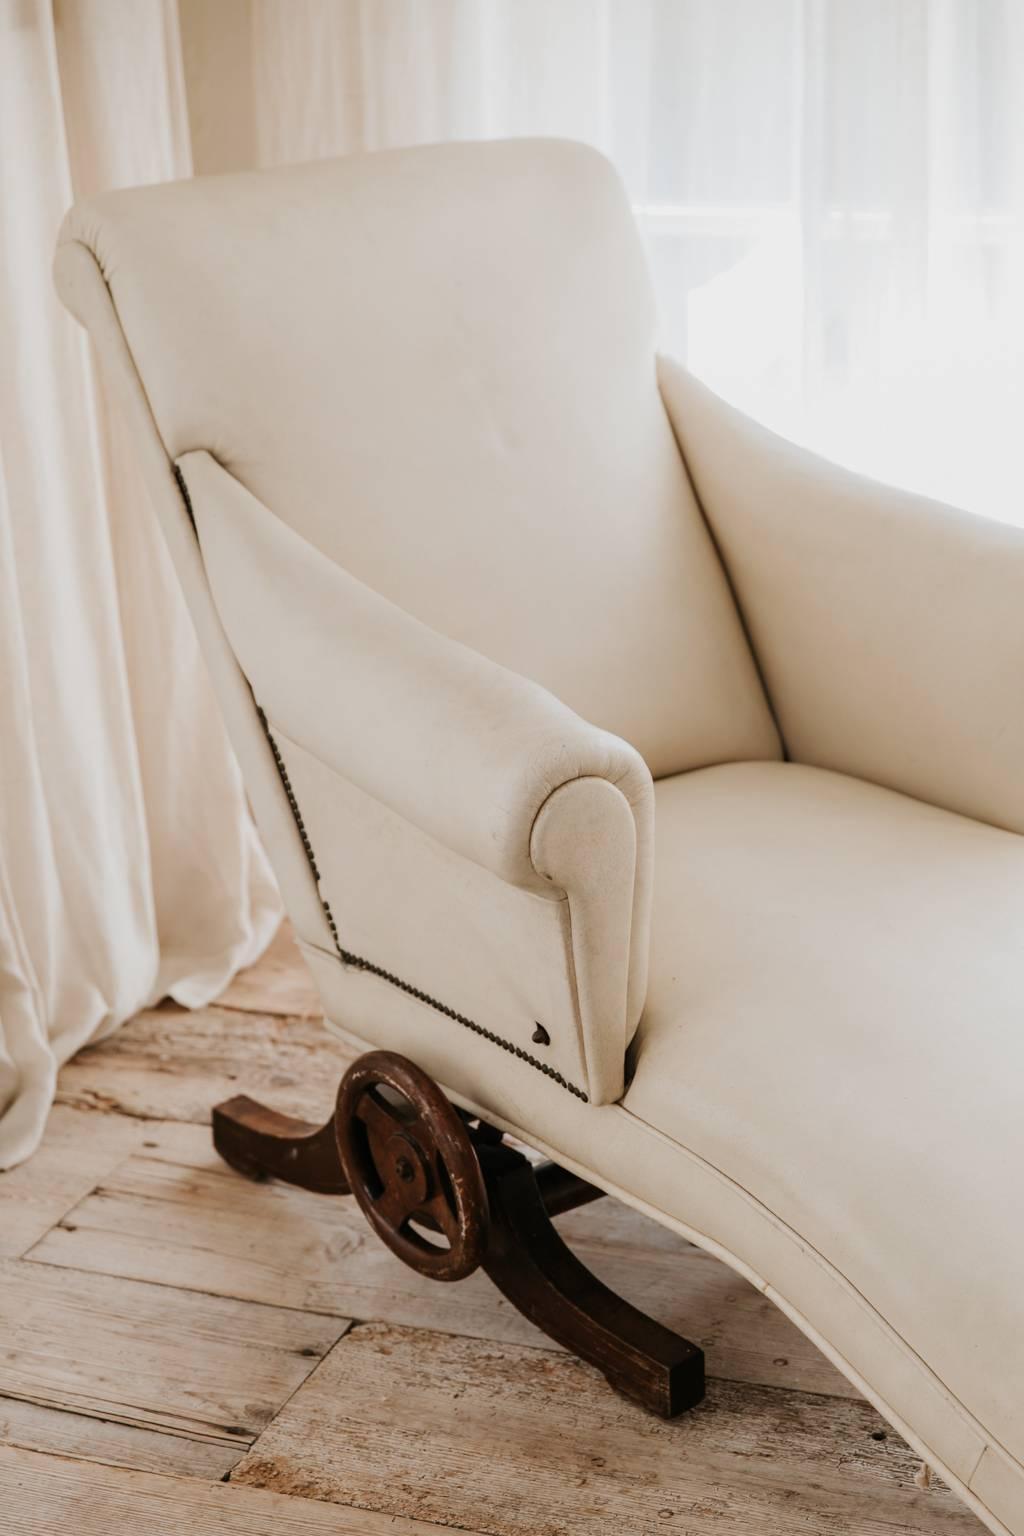 Cette chaise longue s'appelle le surrepos du Docteur Calle, France 1925, hêtre naturel, fer, rembourré et recouvert de cuir blanc, molette en bois pour le réglage du dossier et de l'assise.

Cette chaise longue mécanique a inspiré Le Corbusier et